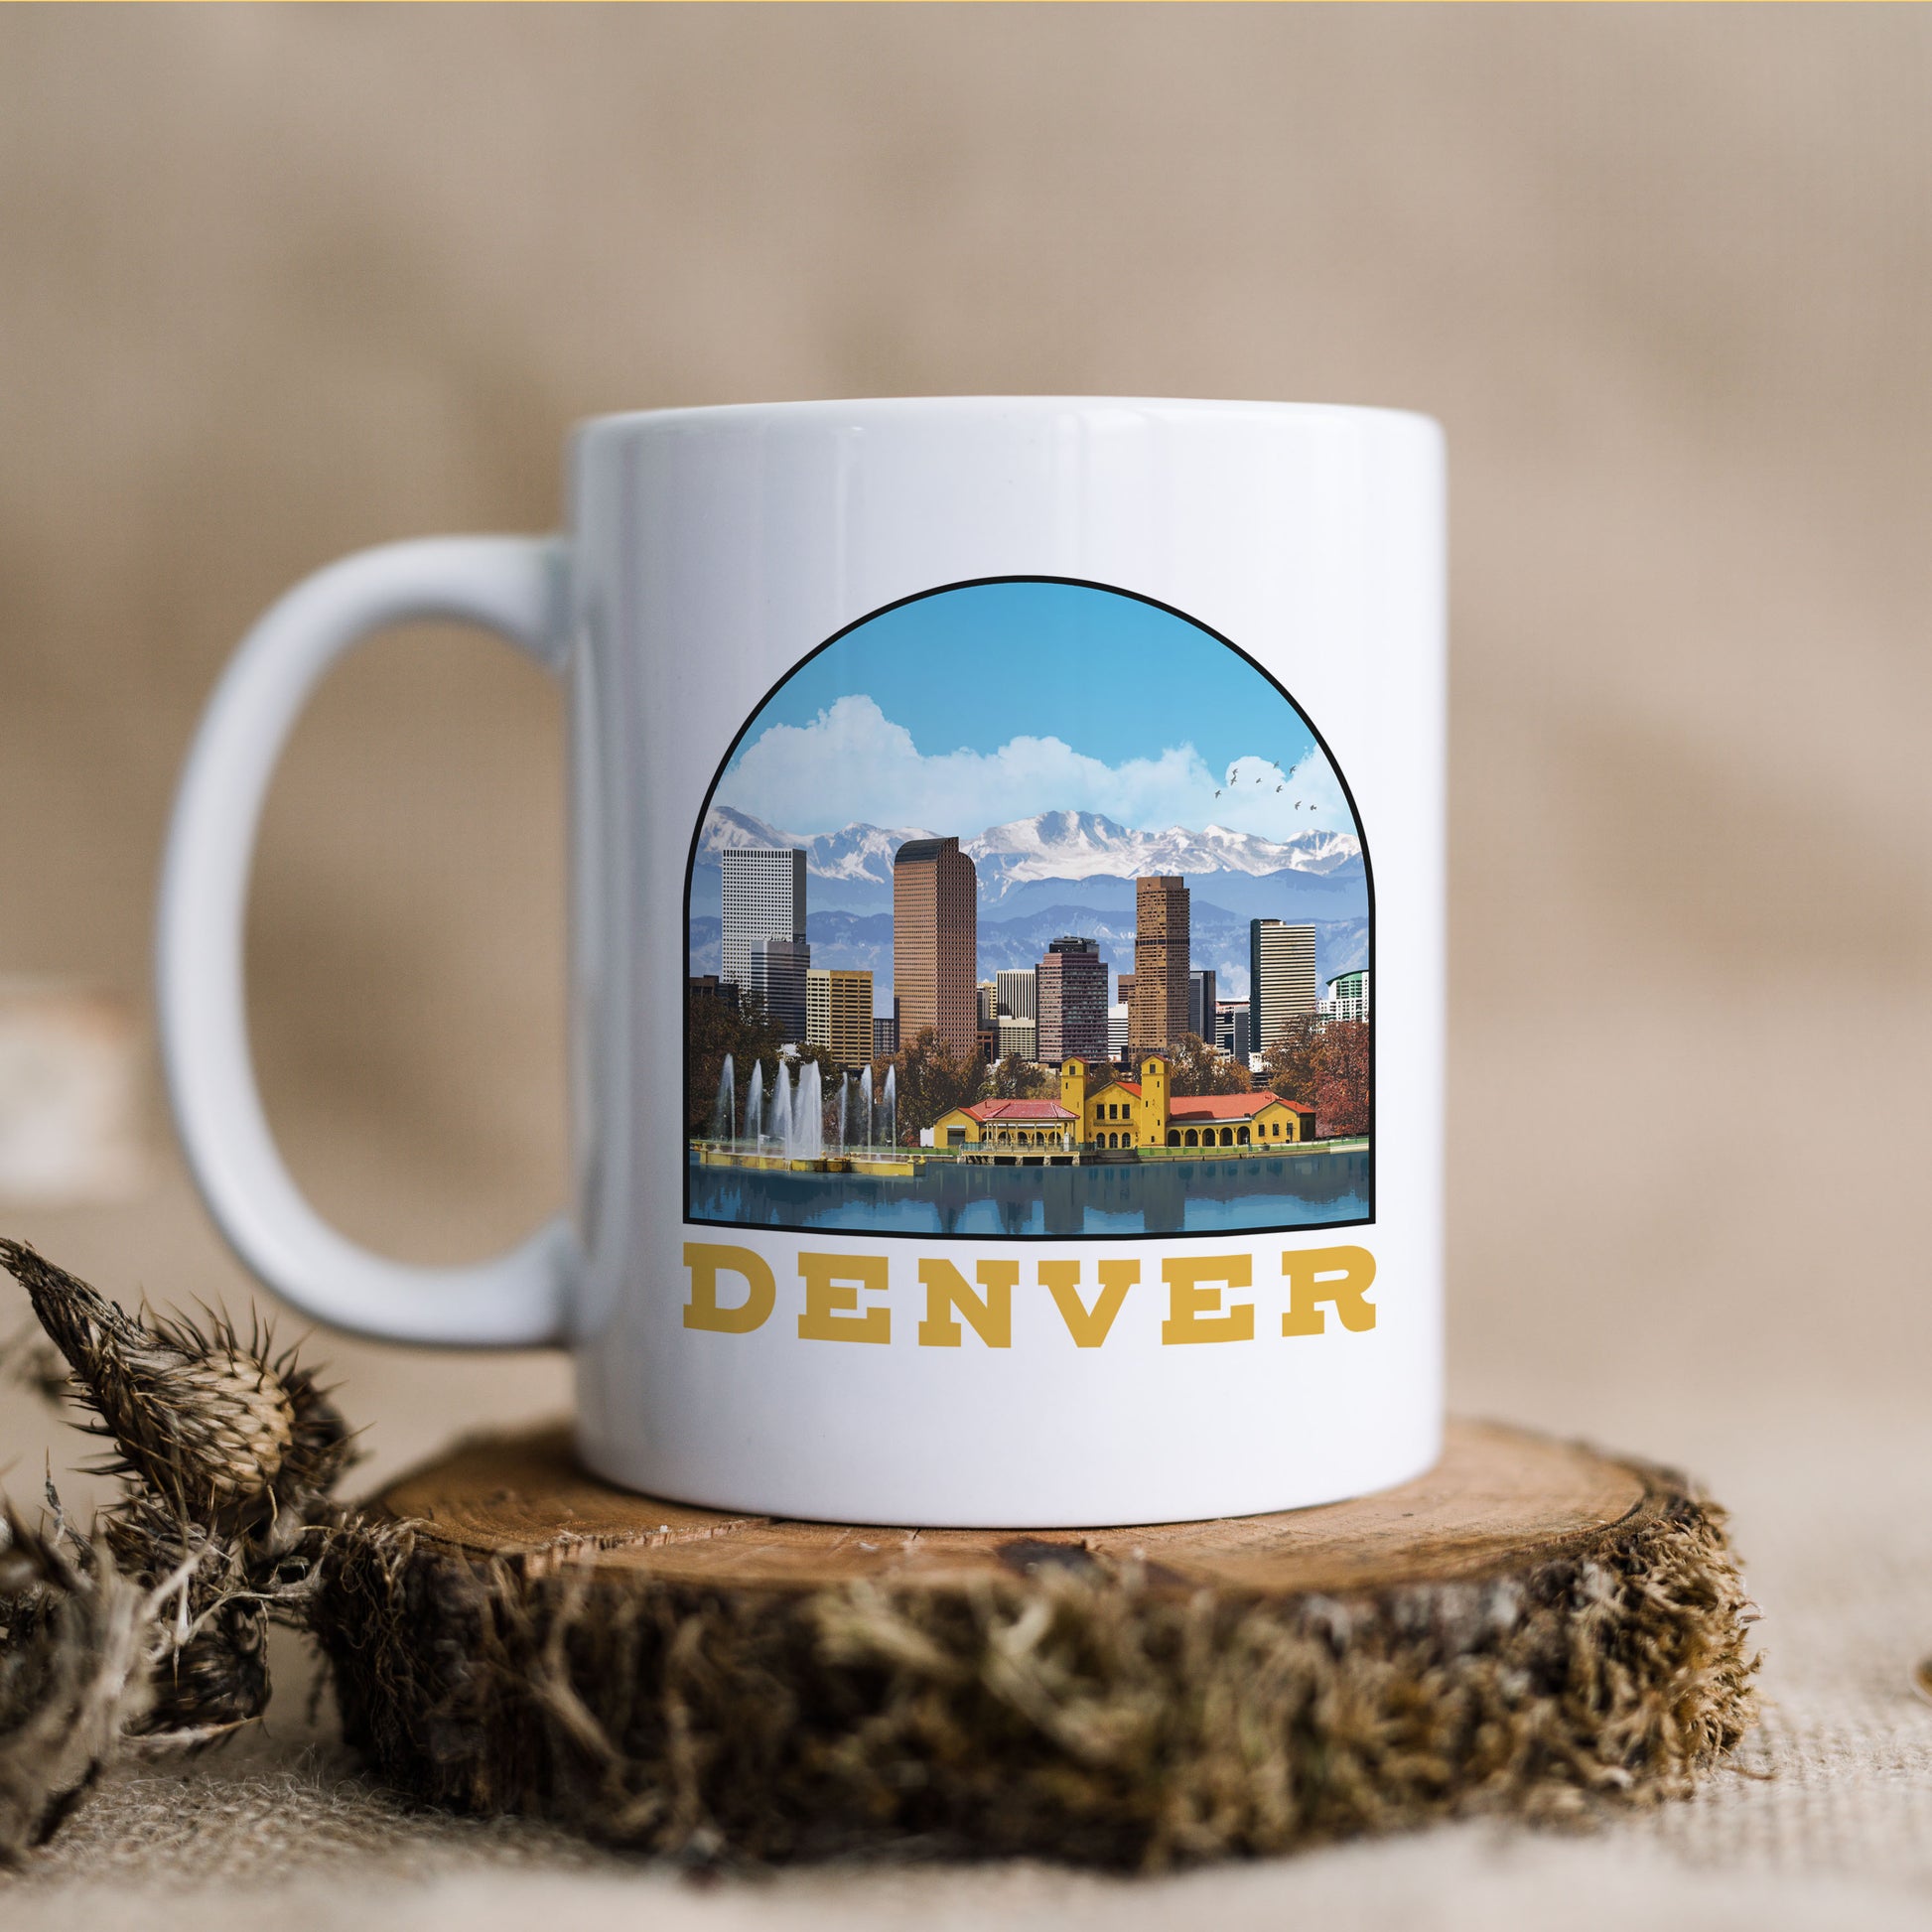 Denver - Ceramic Mug - Vintaprints